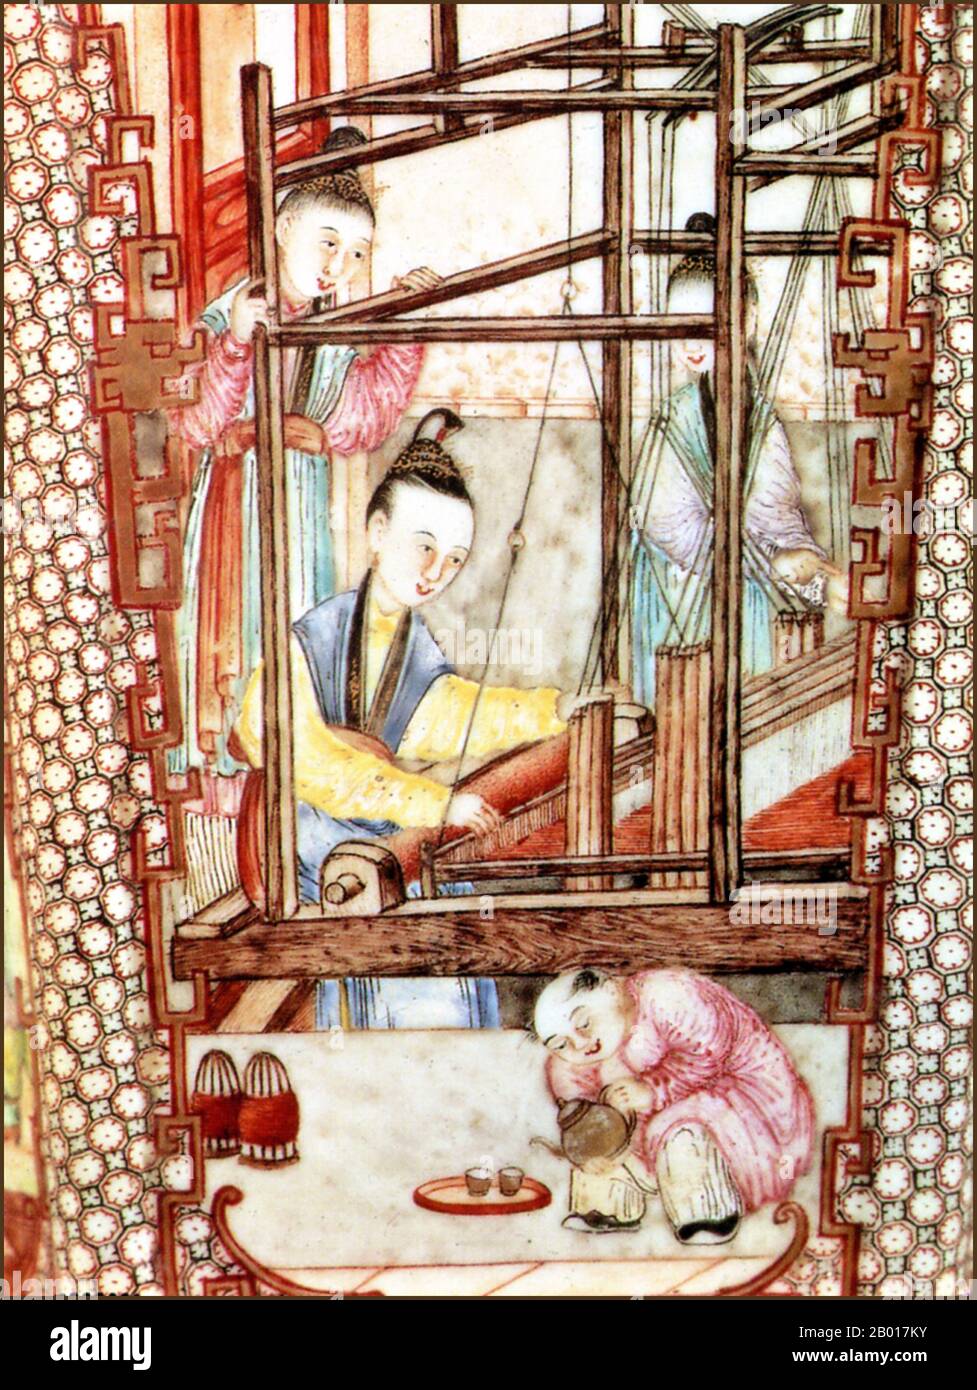 Chine : peinture céramique de la dynastie Ming des tisserands de soie au travail, 15th siècle.Trois femmes tisserands de soie au travail tandis qu'un serviteur verse des tasses de thé.Détail d'un vase en céramique Ming. Banque D'Images